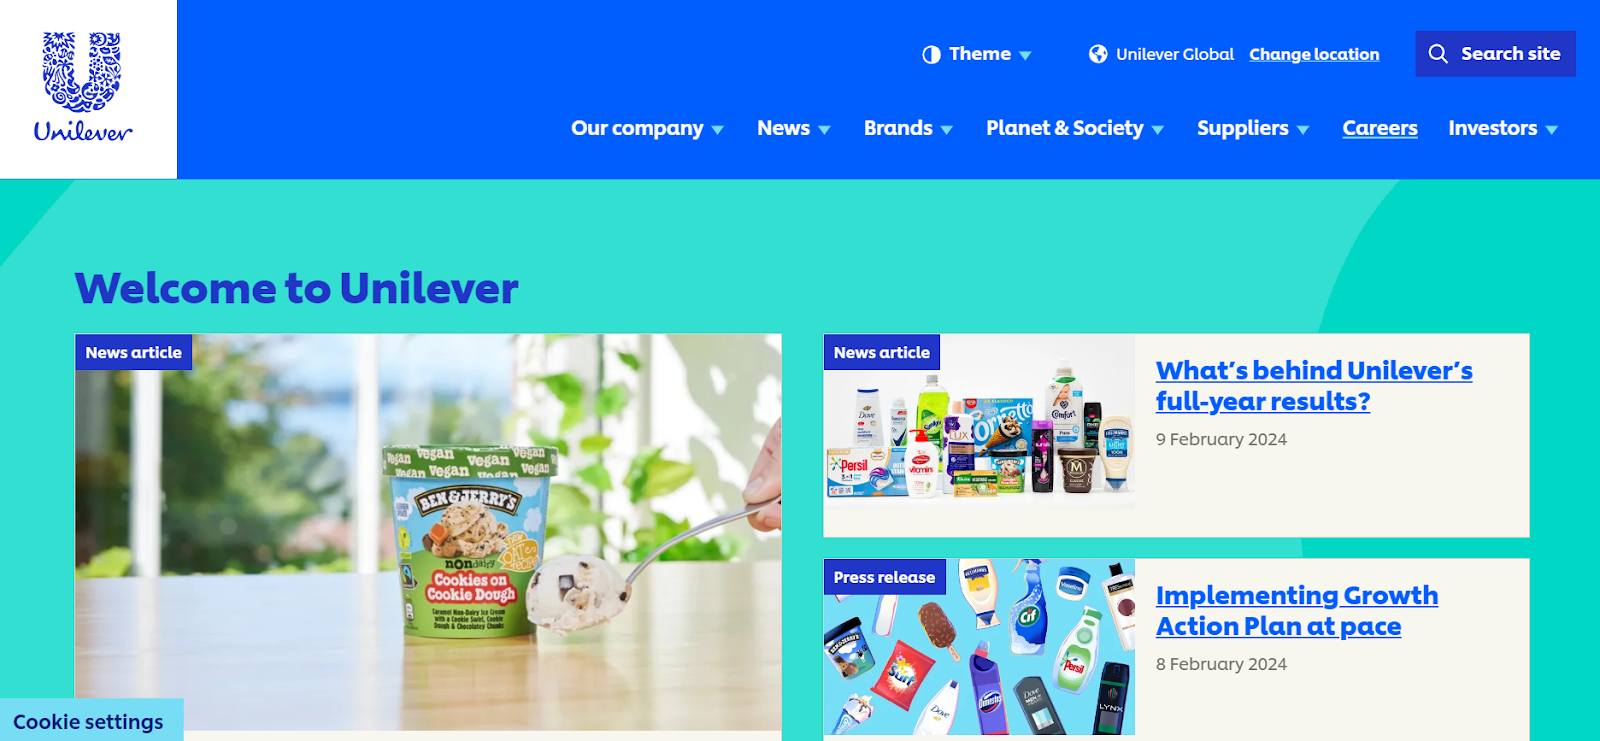 Unilever's homepage